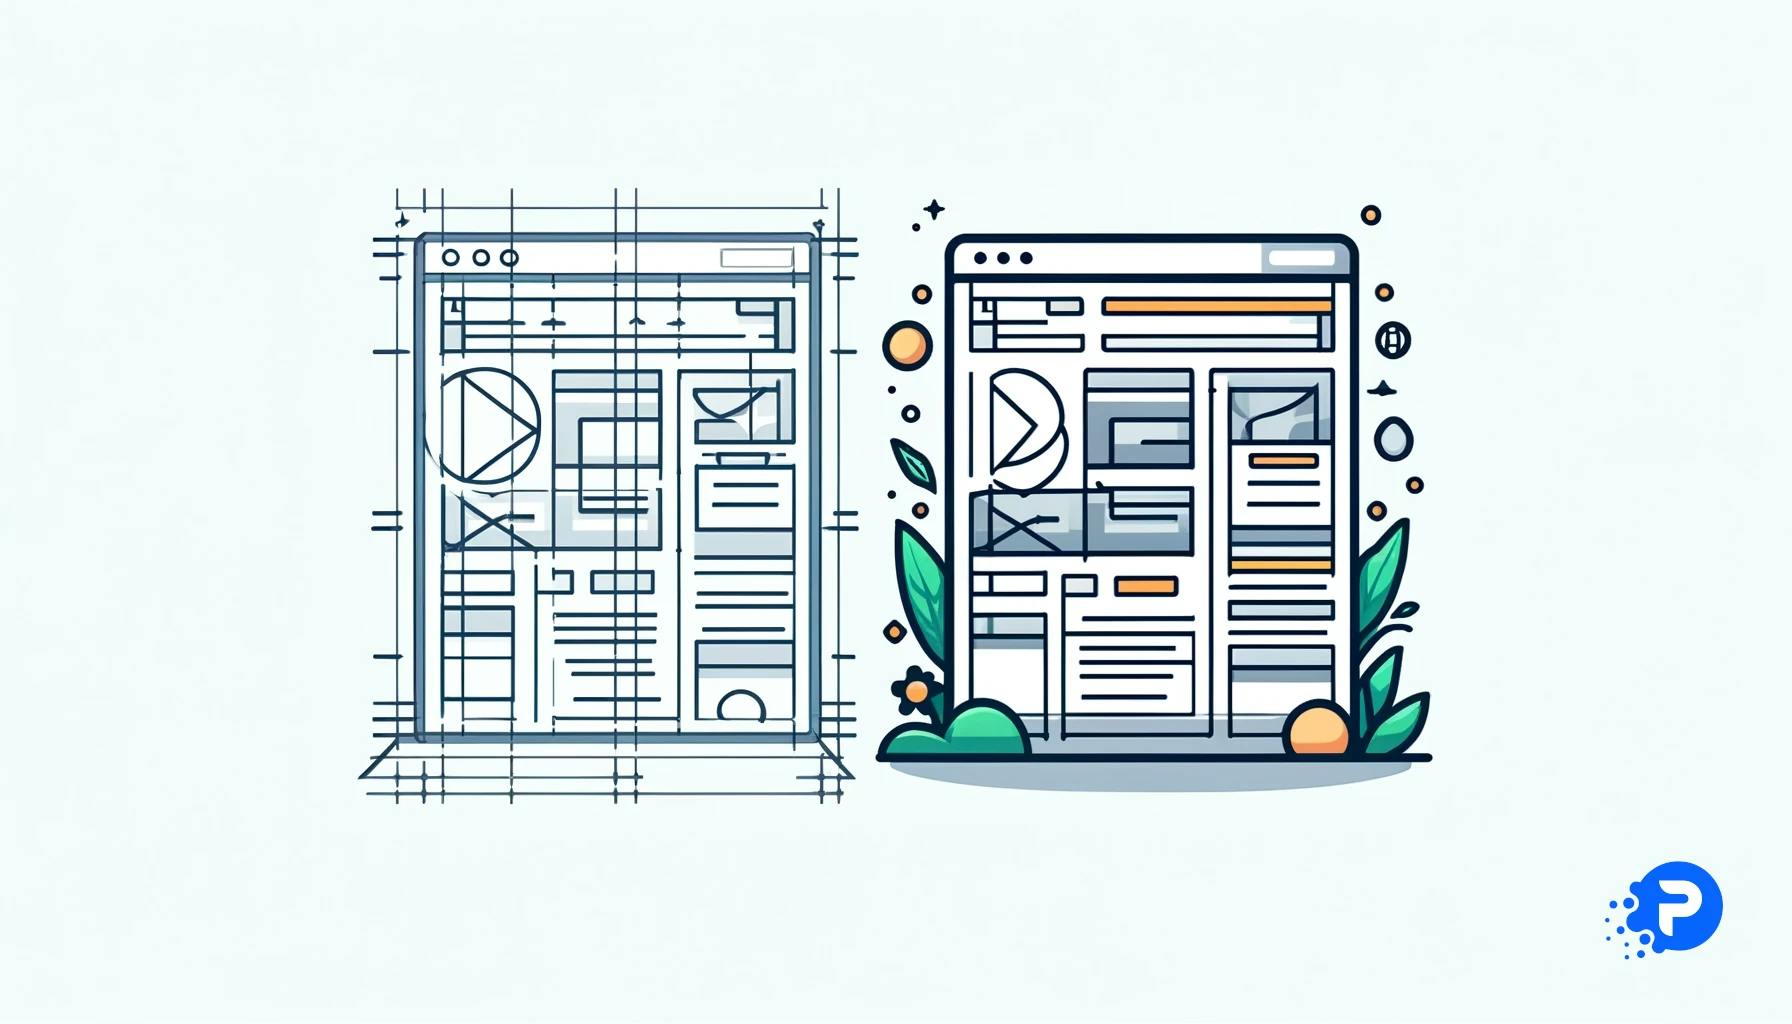 Ilustração minimalista mostrando dois estágios do desenvolvimento web lado a lado. À esquerda, um wireframe básico representa a estrutura inicial do site. À direita, a versão final do design, simplificada com cores e tipografia básicas, ilustrando a transformação clara do conceito ao produto.